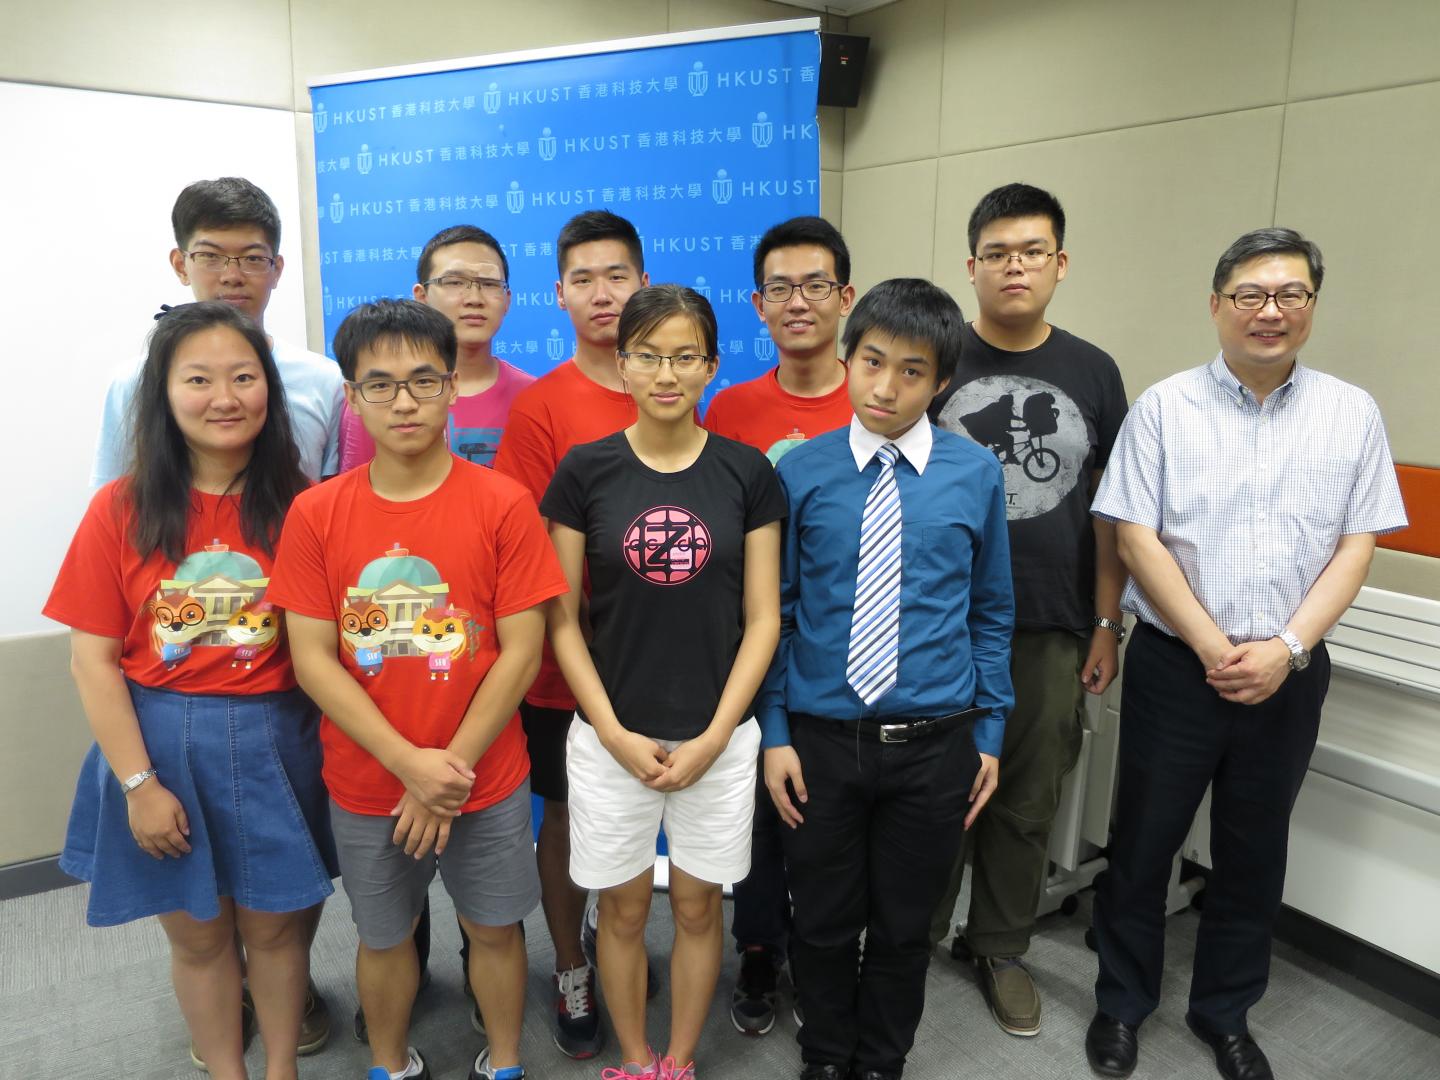  科大协理副校长谭嘉因教授(右一)恭贺东南大学丶南京理工大学及科大的获奖队伍。